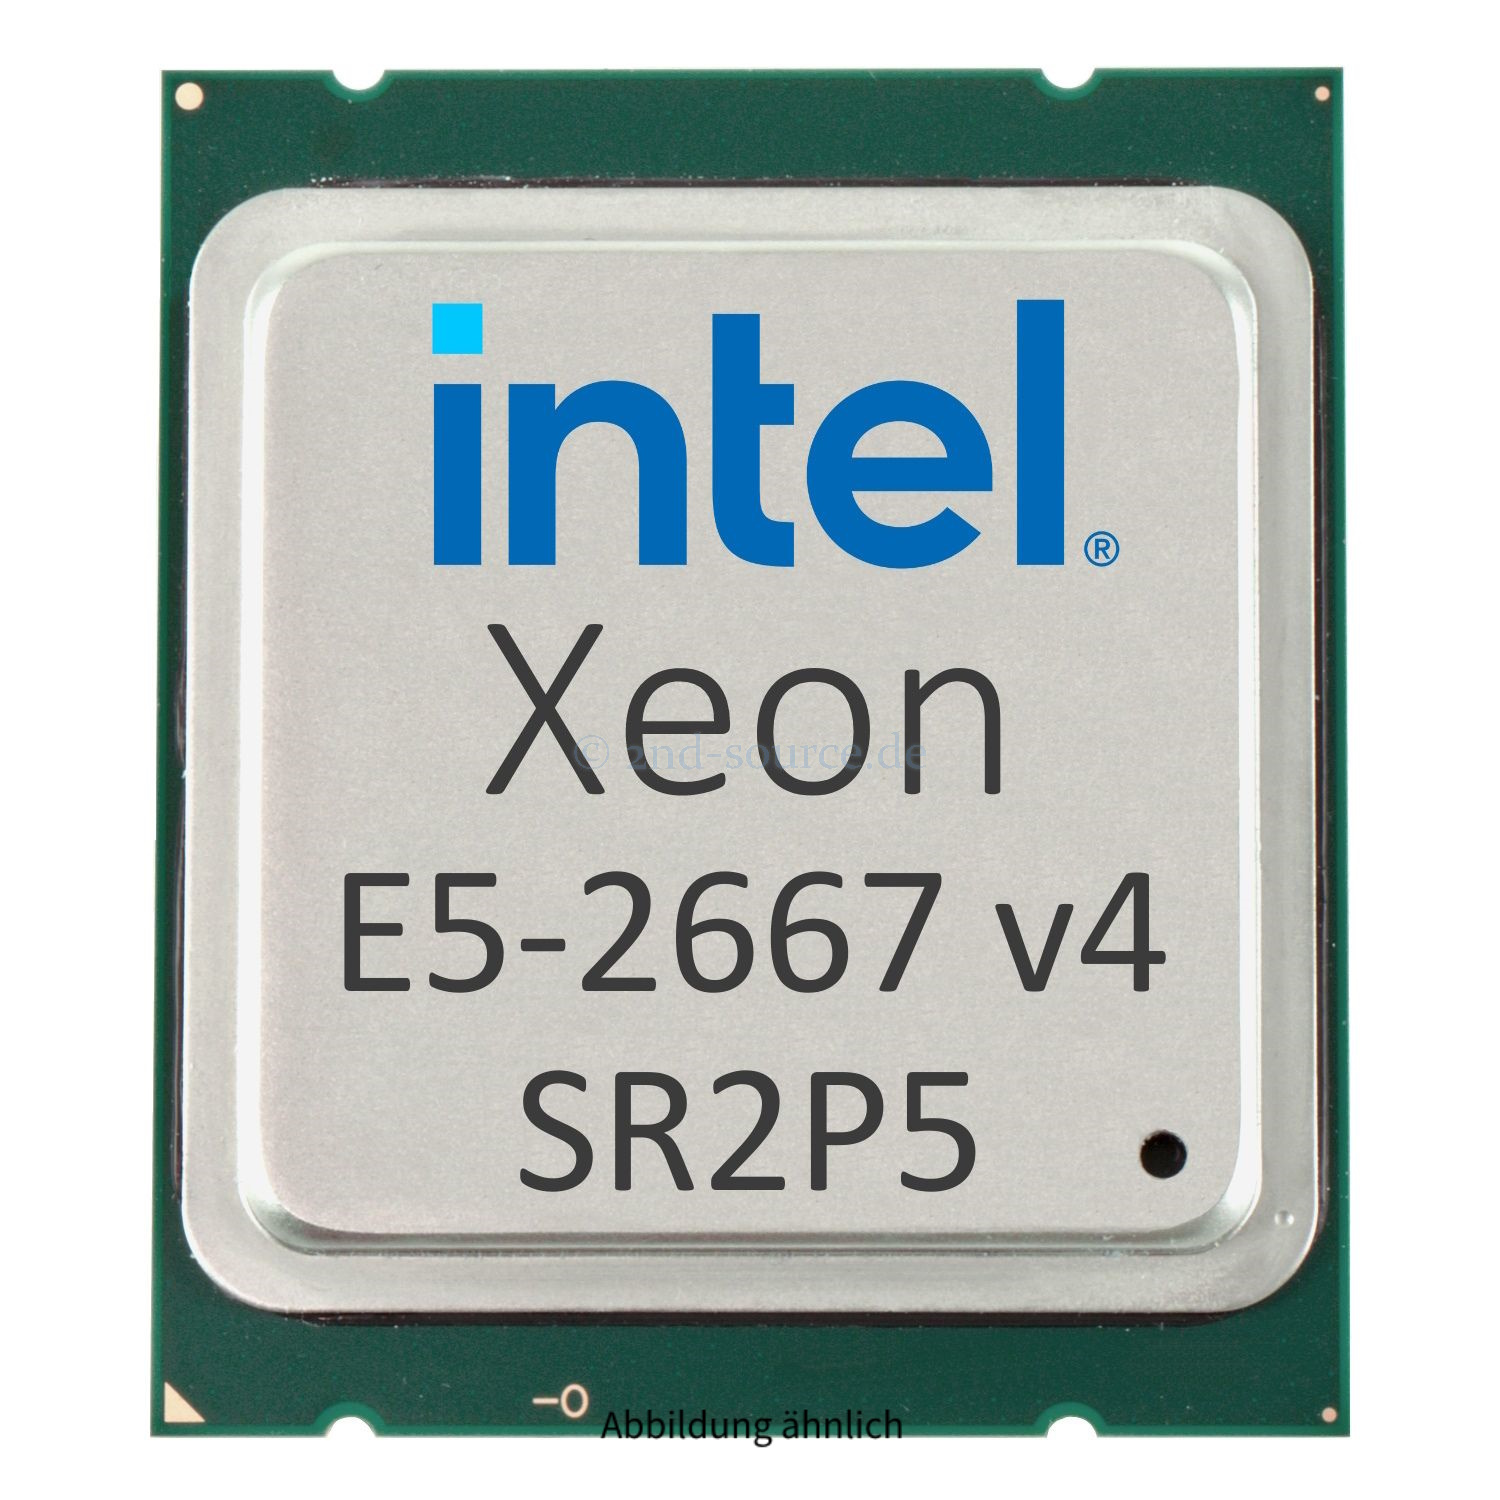 Intel Xeon E5-2667 v4 3.20GHz 25MB 8-Core CPU 135W SR2P5 CM8066002041900